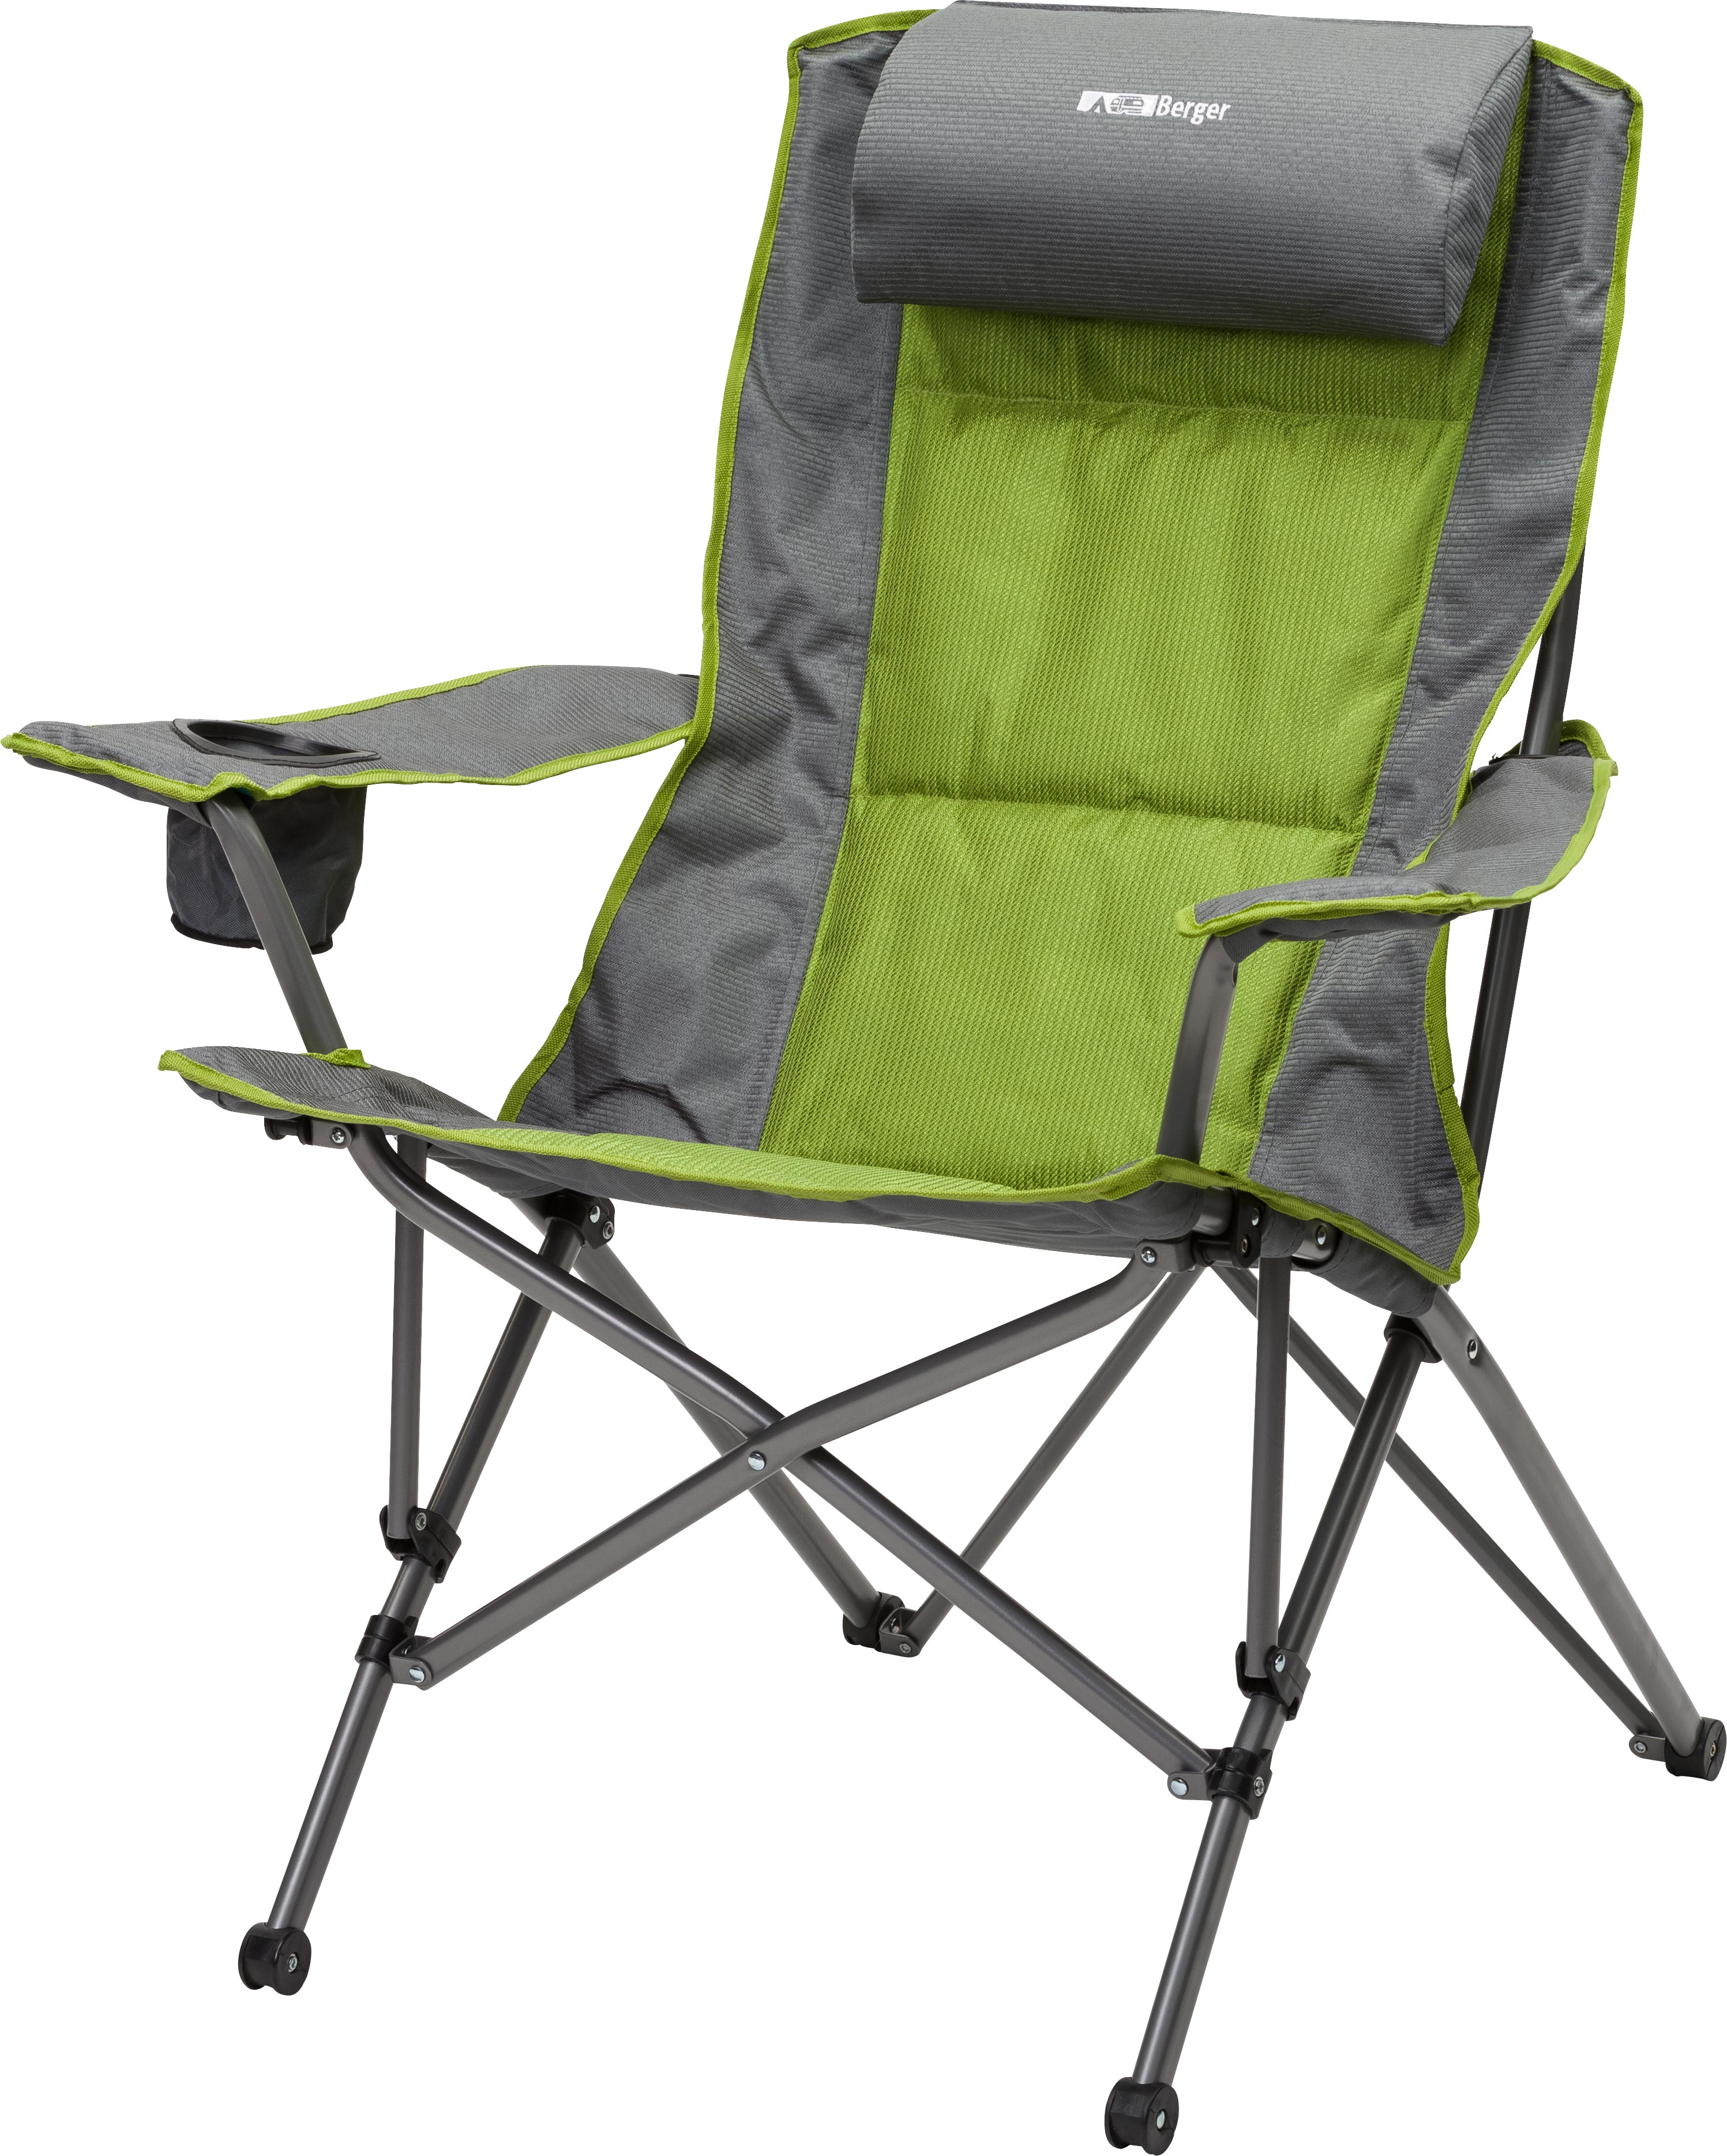 Кресло походное складное. Складное кресло Frosinone Camping Active. Мебель для кемпинга Berger. Стул складной туристический JD-1005 33,5х27х35см. Blaupunkt стул туристический складной.